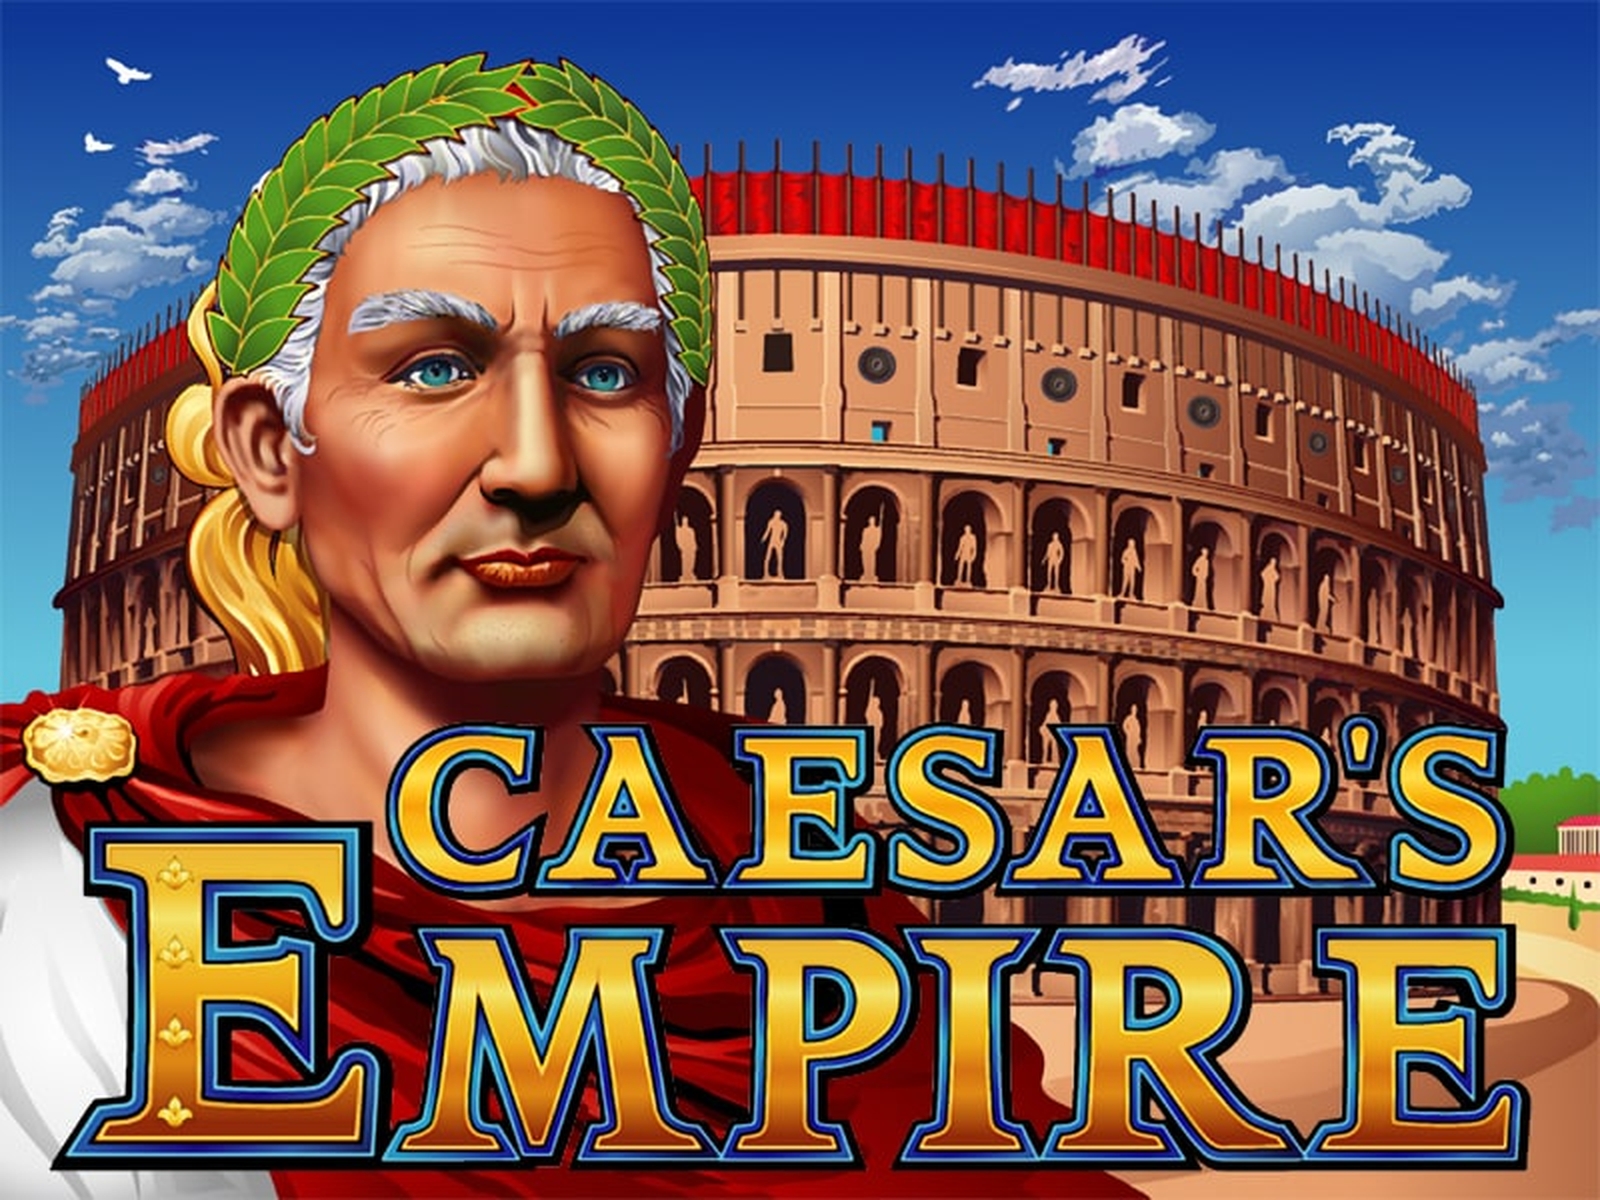 Caesars Empire demo